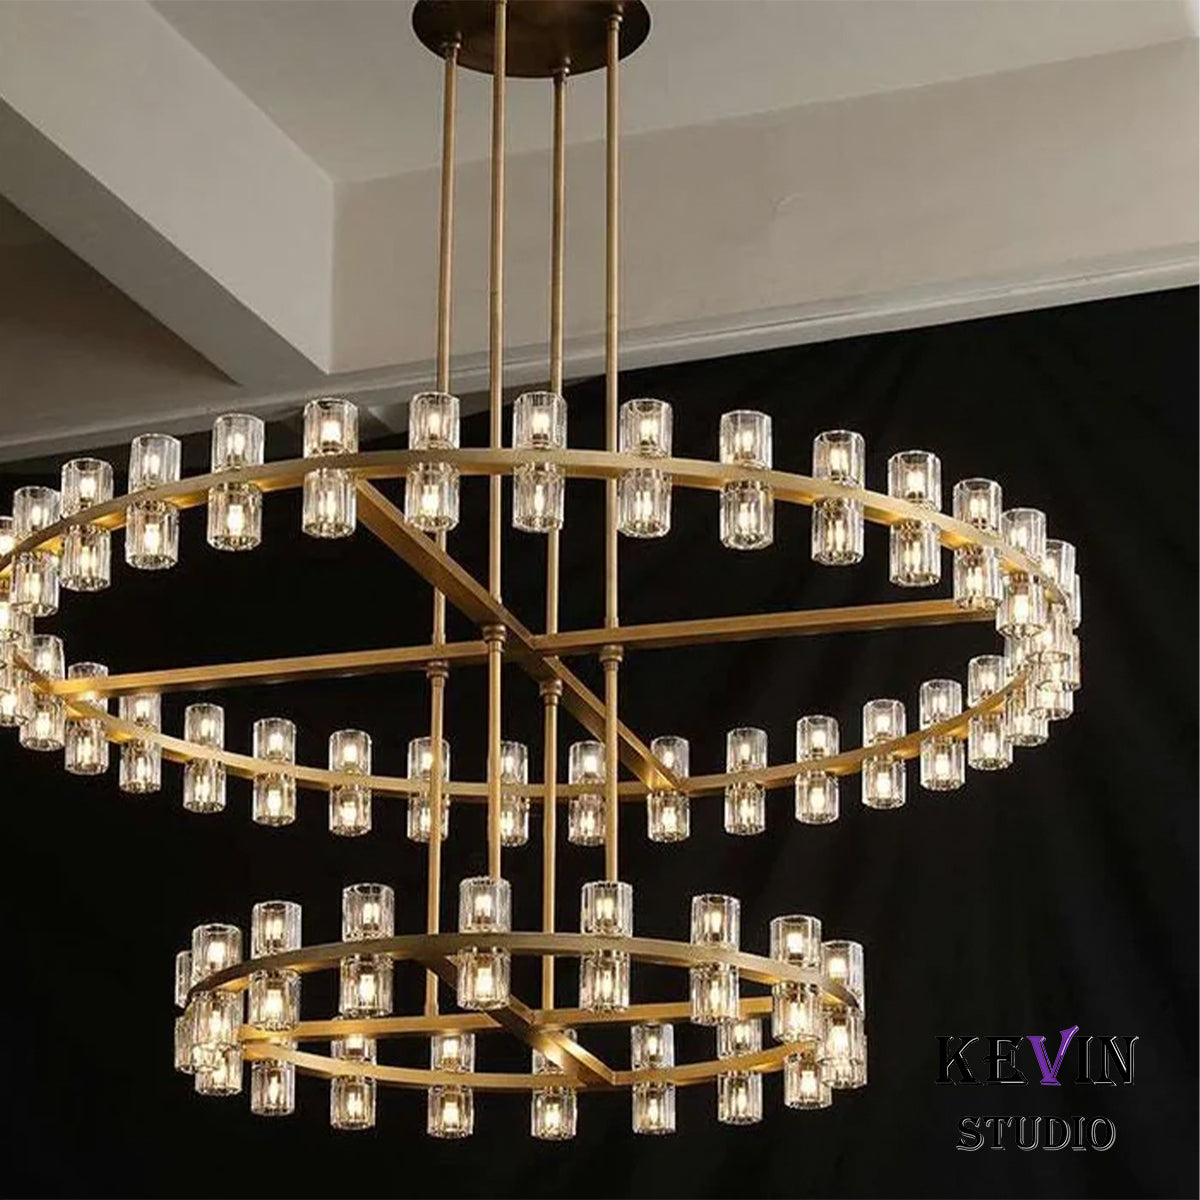 Aminda Modern Round 2-tier Large Crystal Chandelier For Living Room chandelier Kevin Studio Inc   